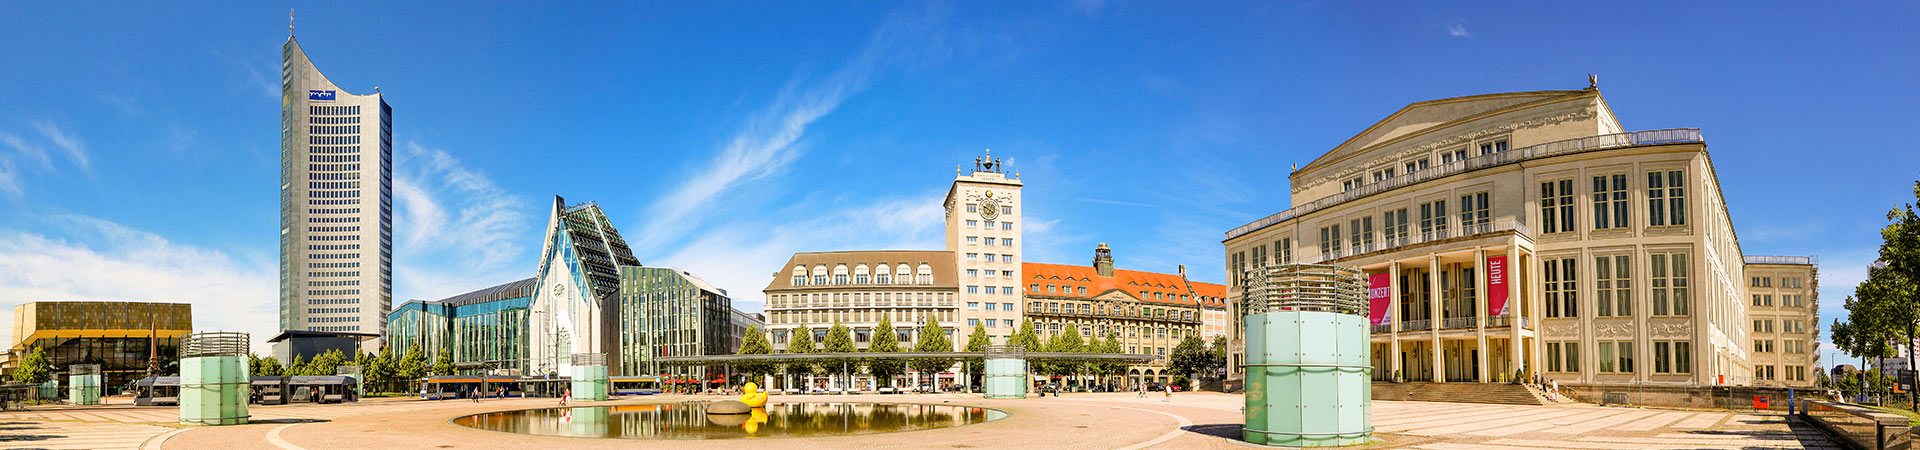 Panoramabild von Leipzig, ein Standort der DPFA Akademie für Pädagogik